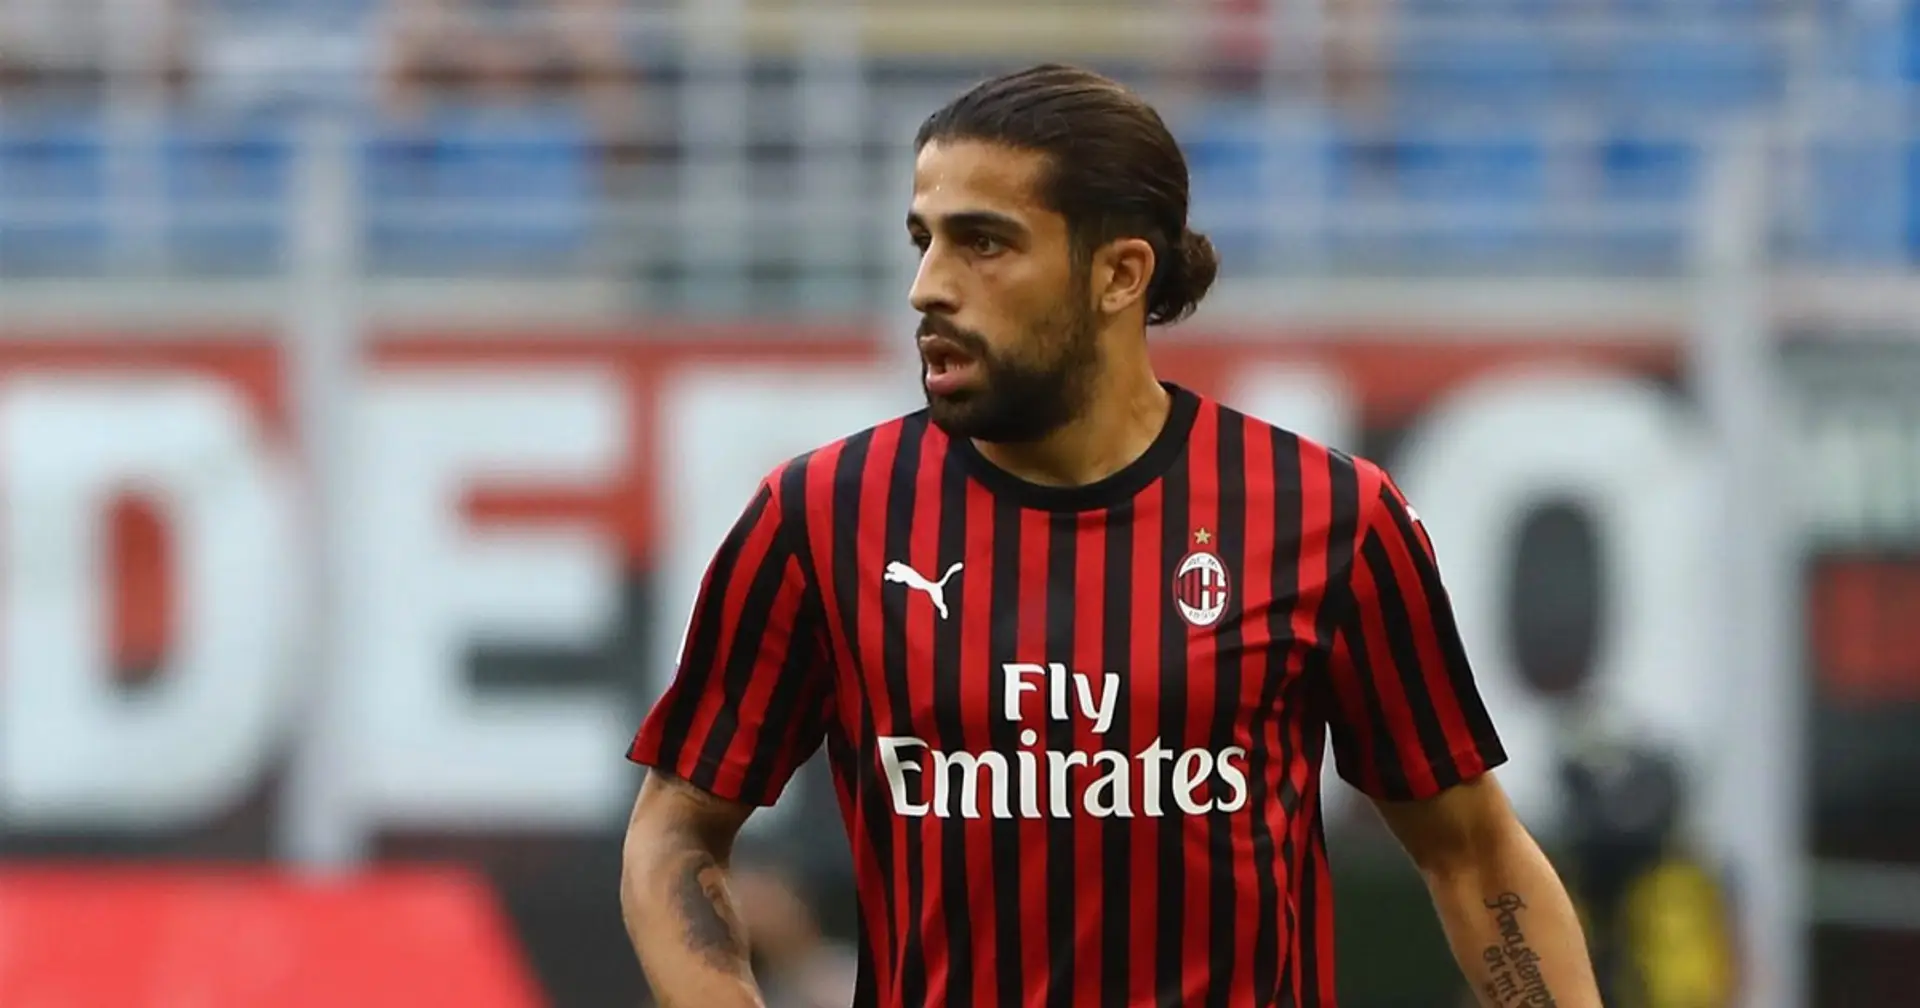 UFFICIALE | Ricardo Rodriguez non è più un giocatore del Milan: lo svizzero passa al Torino dell'ex Giampaolo